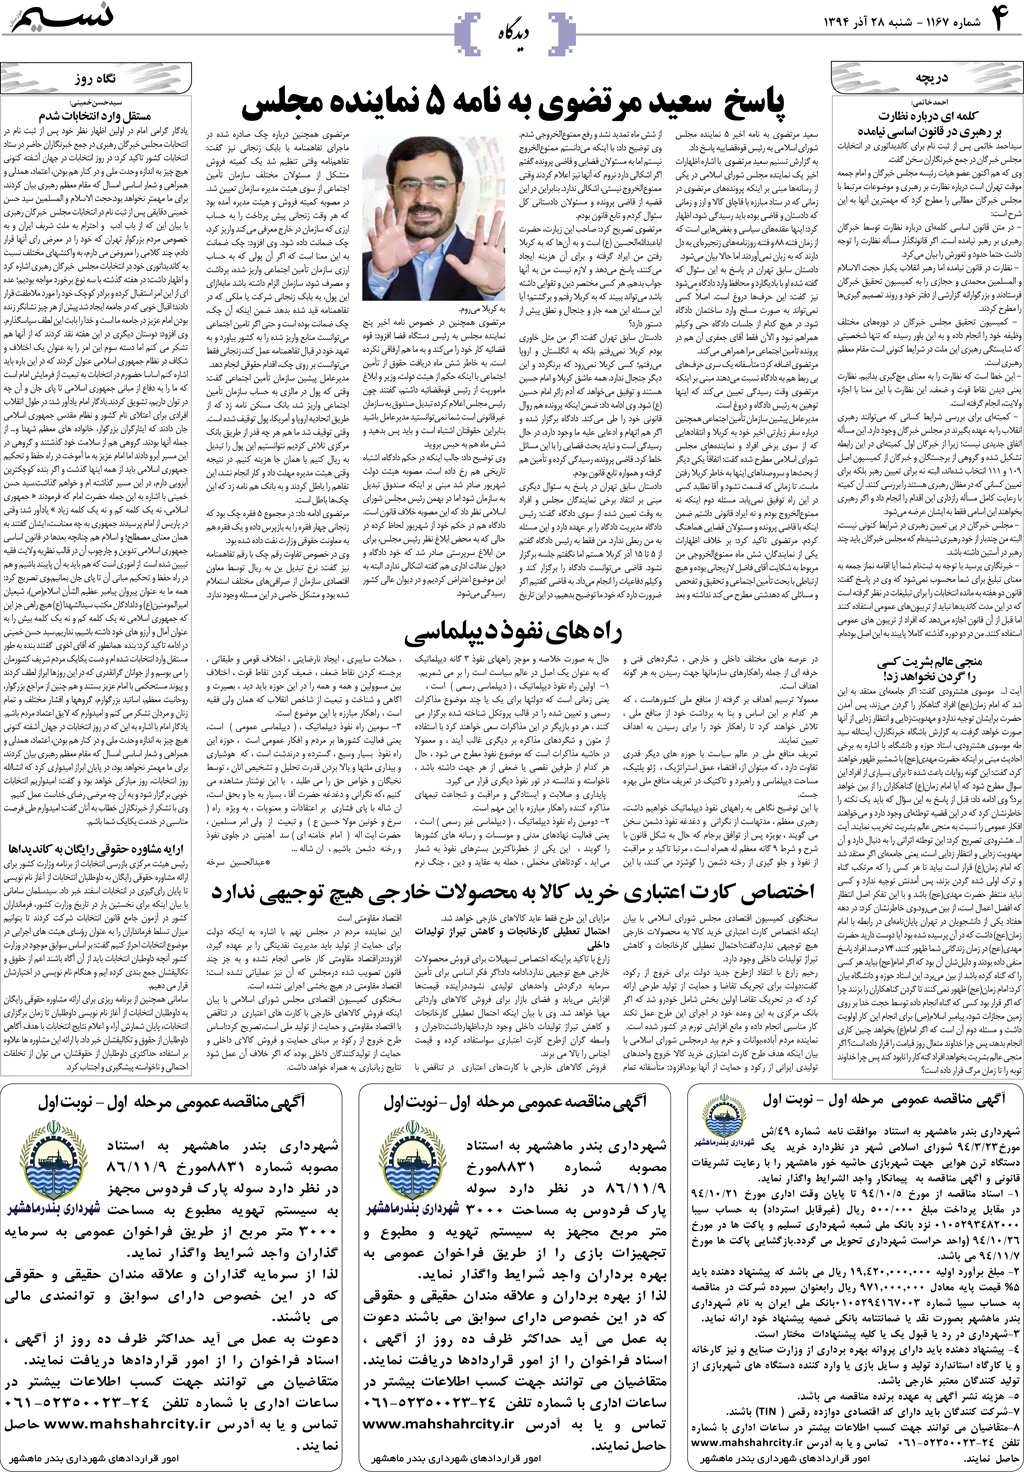 صفحه دیدگاه روزنامه نسیم شماره 1167